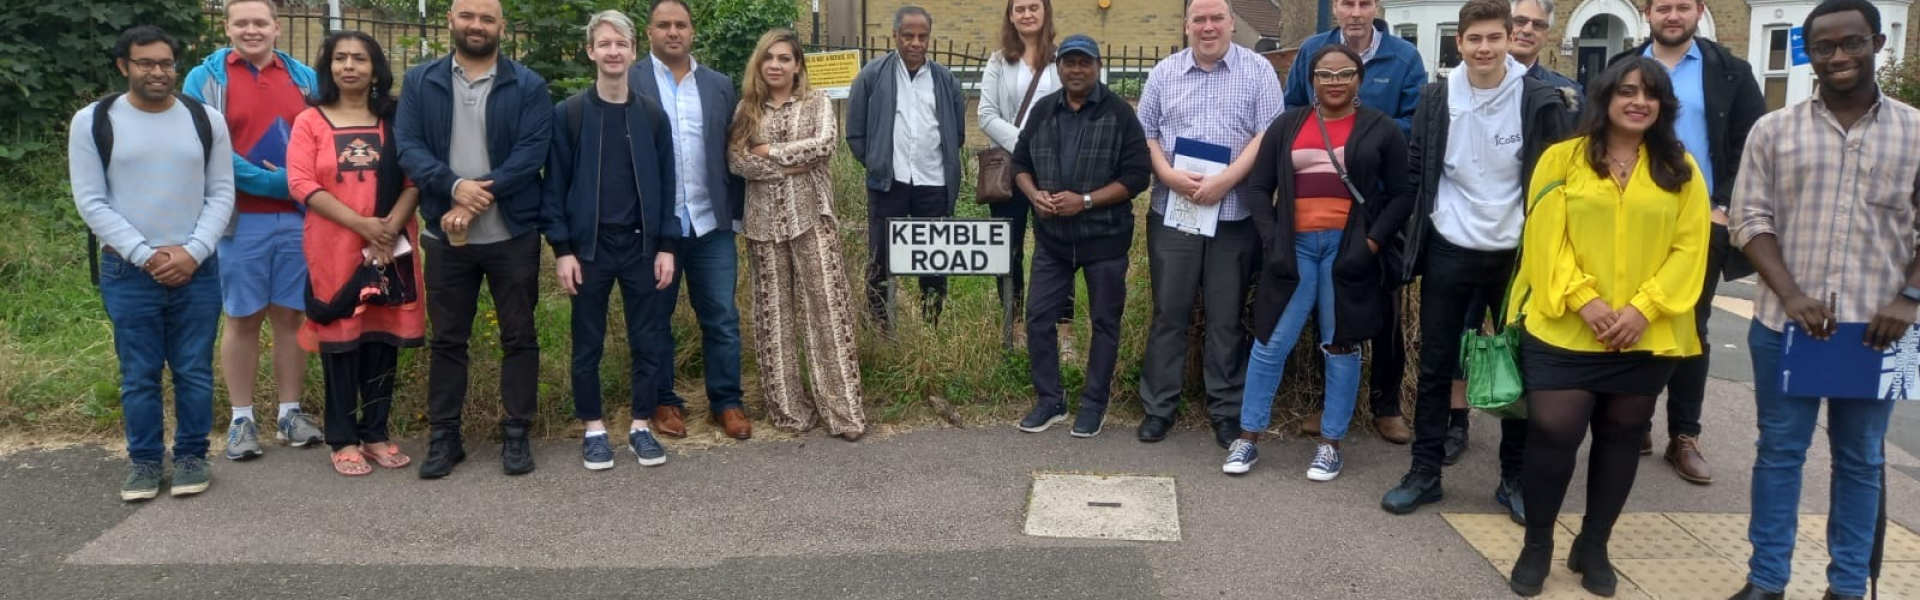 Activists on Kemble Road